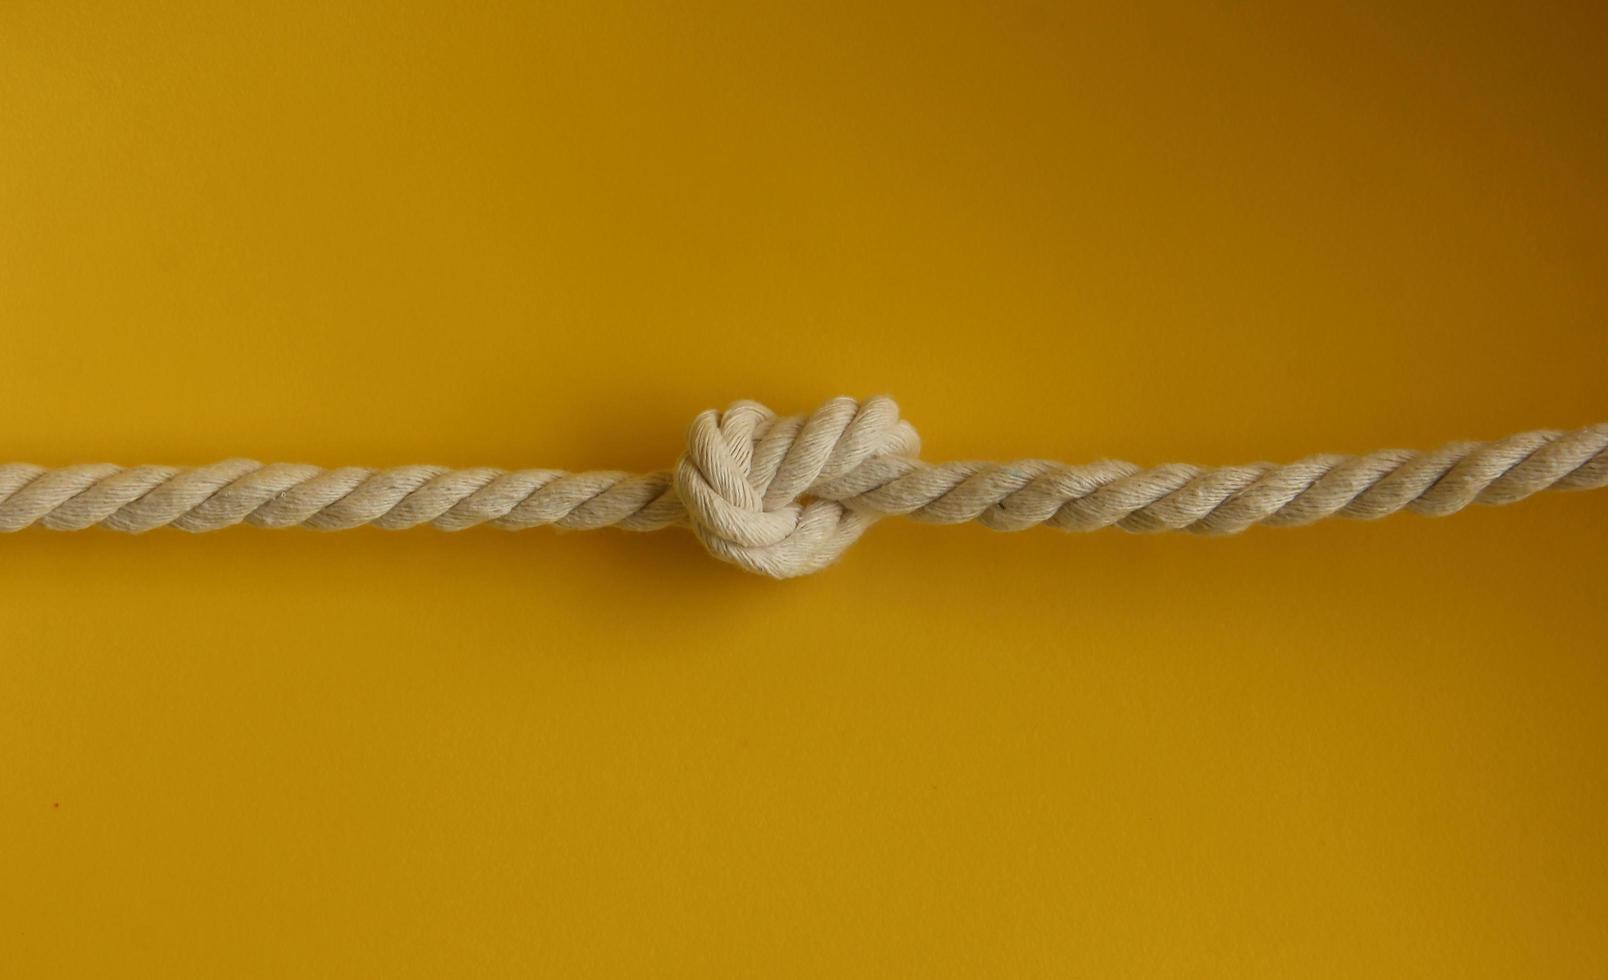 stark Weiß dick geflochten Segeln oder Kunst basteln Seil Foto isoliert auf einfach Gelb Hintergrund. gebunden oben Seil Knoten.